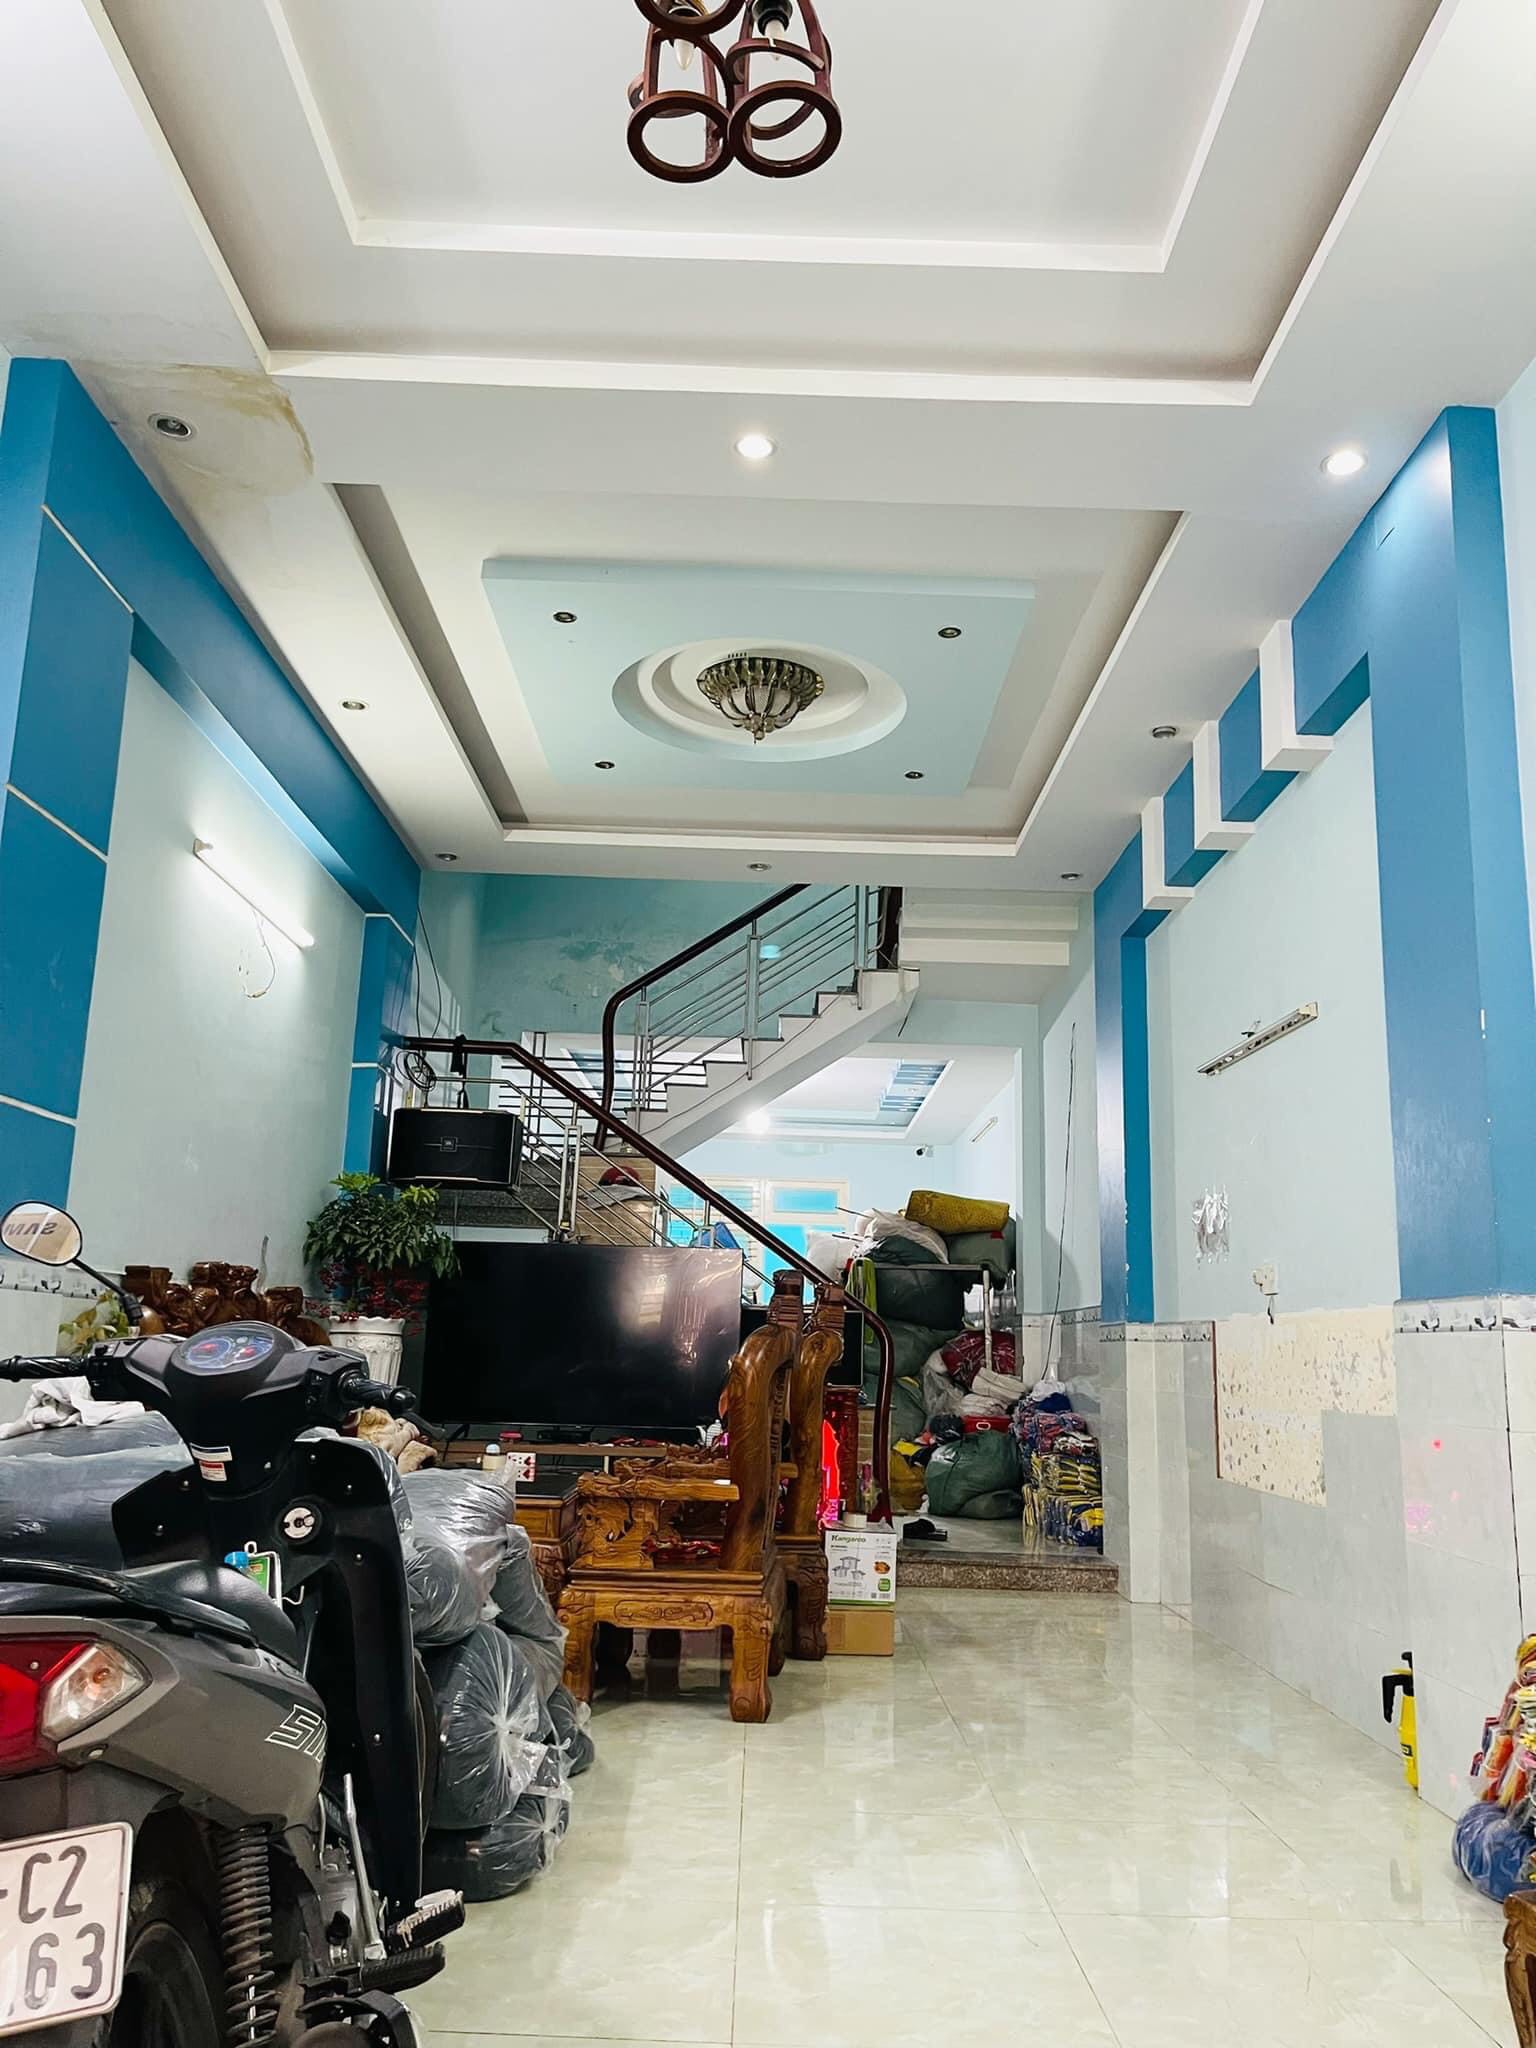 Bán nhà Phạm Văn Hai, Tân Bình, 61m2, vuông vức, hxh, giá chào 5,2tỷ TL